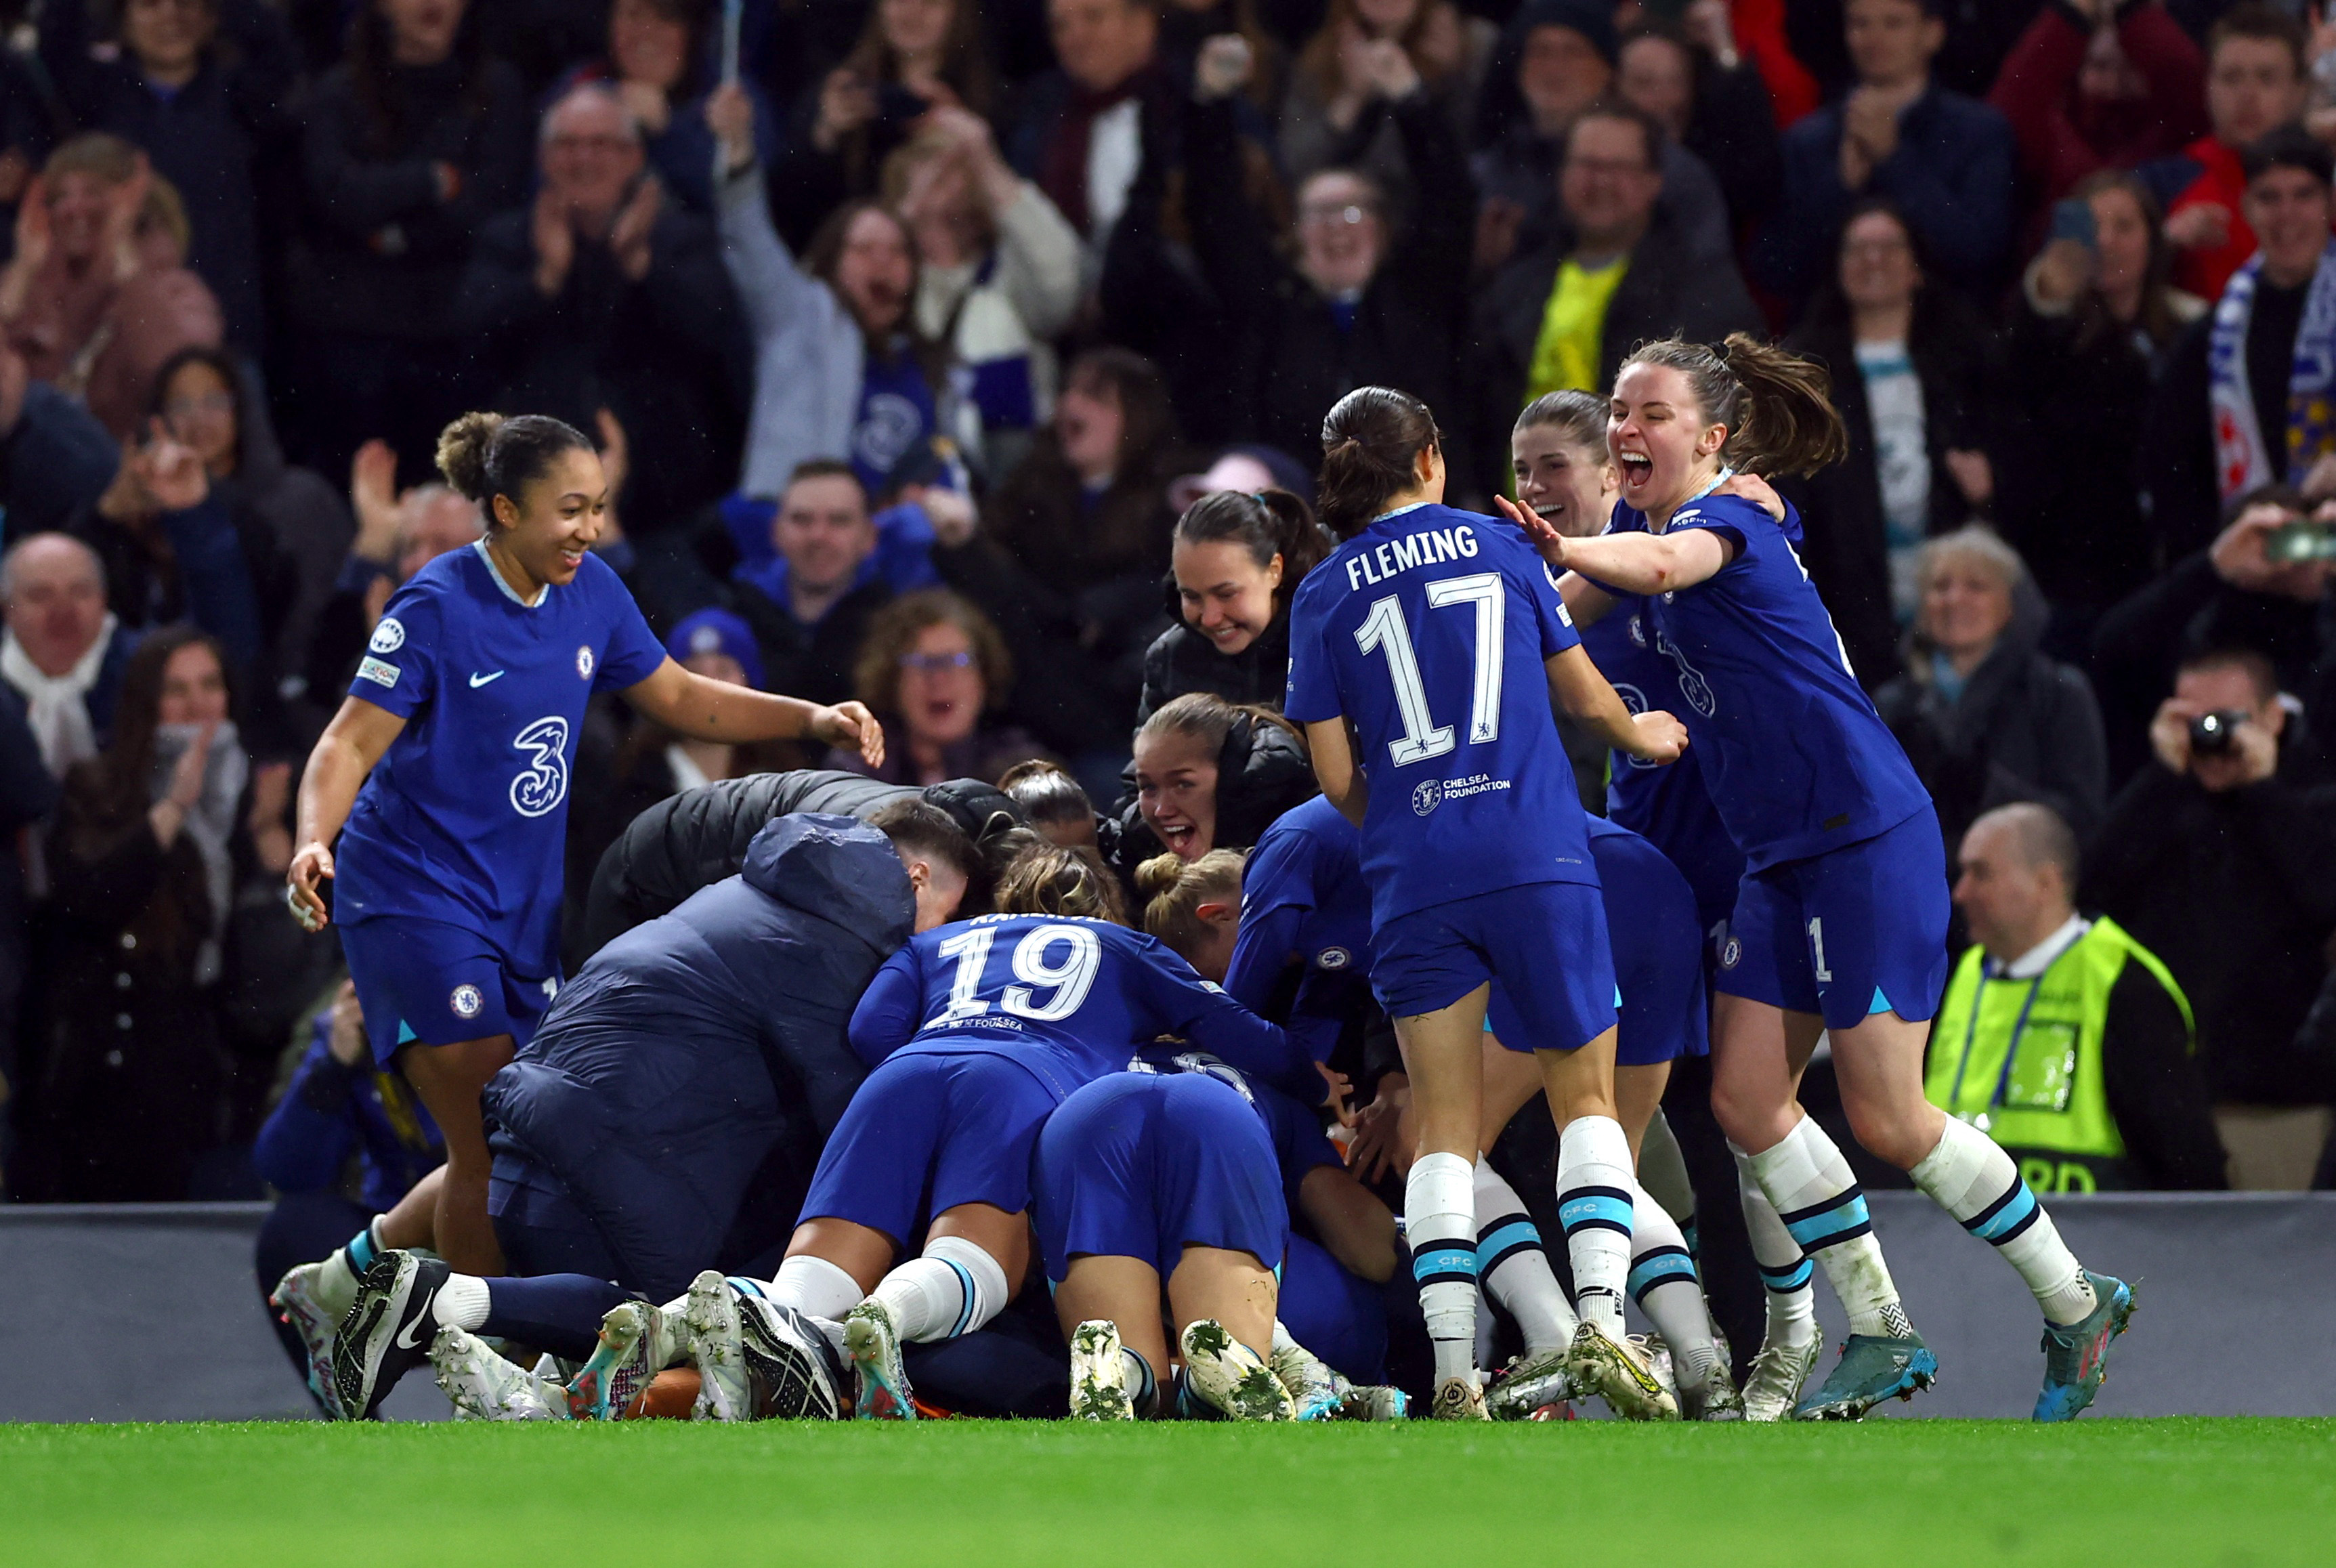 Women's Champions League - Quarter Finals - Second Leg - Chelsea v Olympique Lyonnais